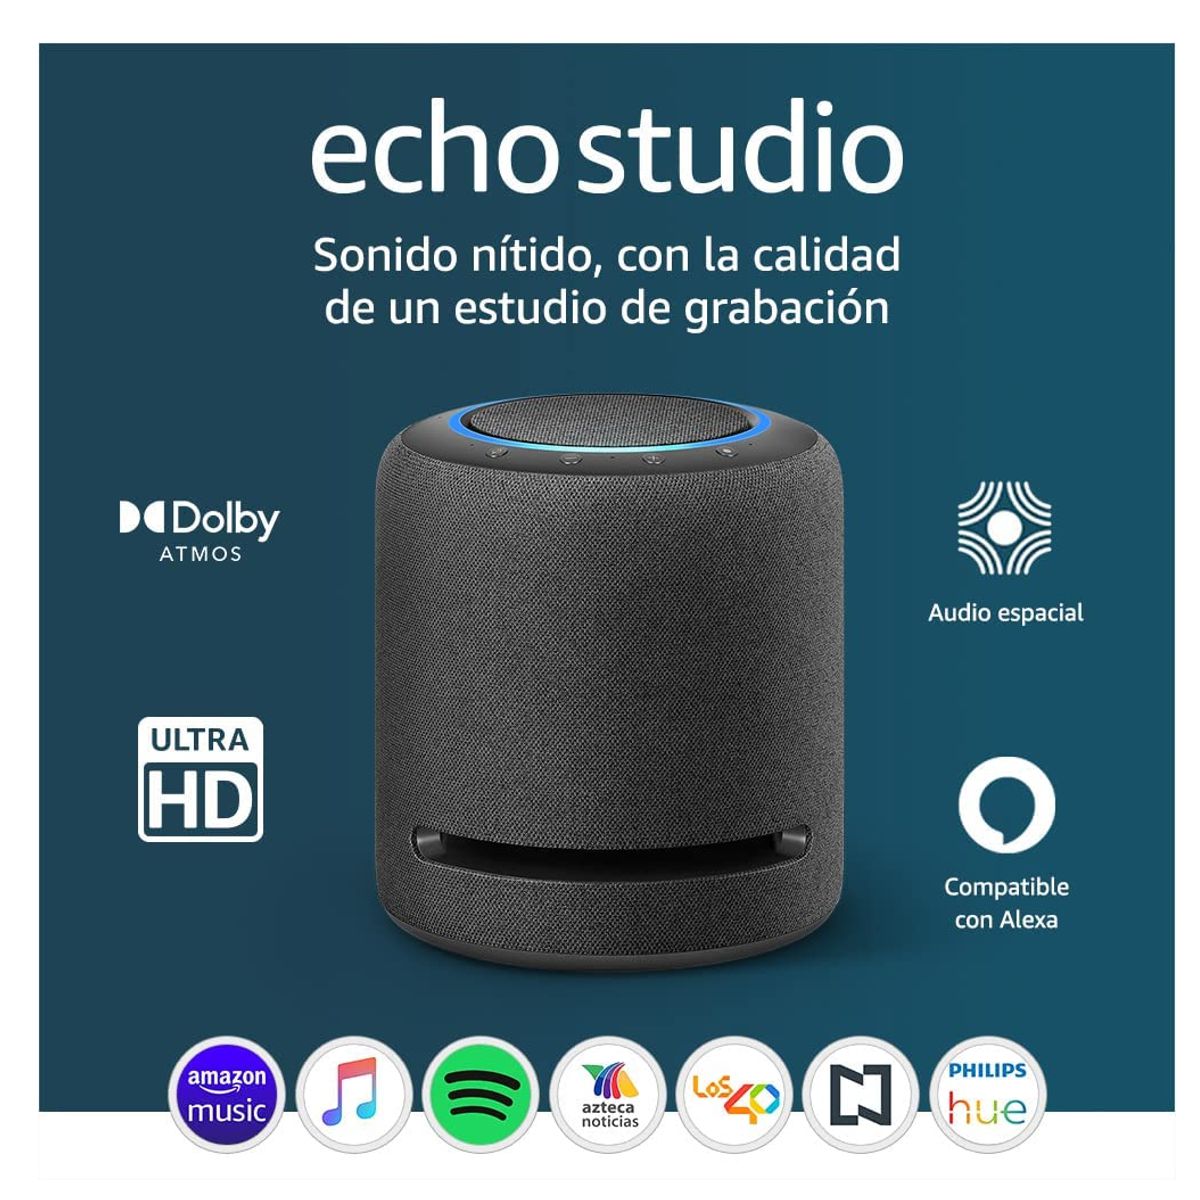 Reseña: Alexa Echo Studio, una bocina inteligente de alta fidelidad